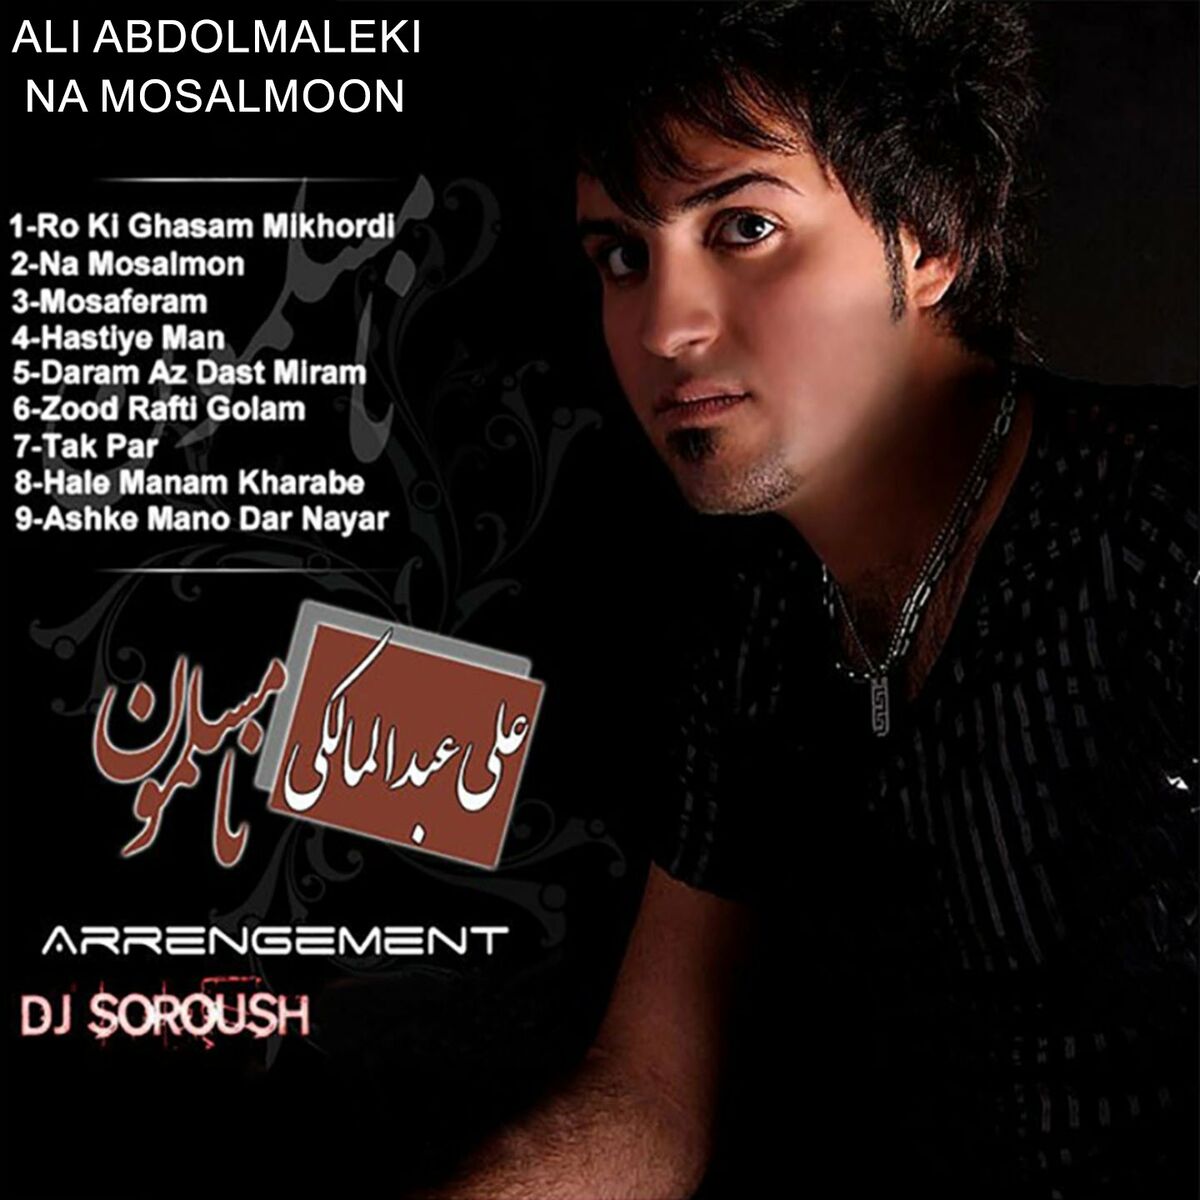 آلبوم جدید علی عبدالمالکی نامسلمون